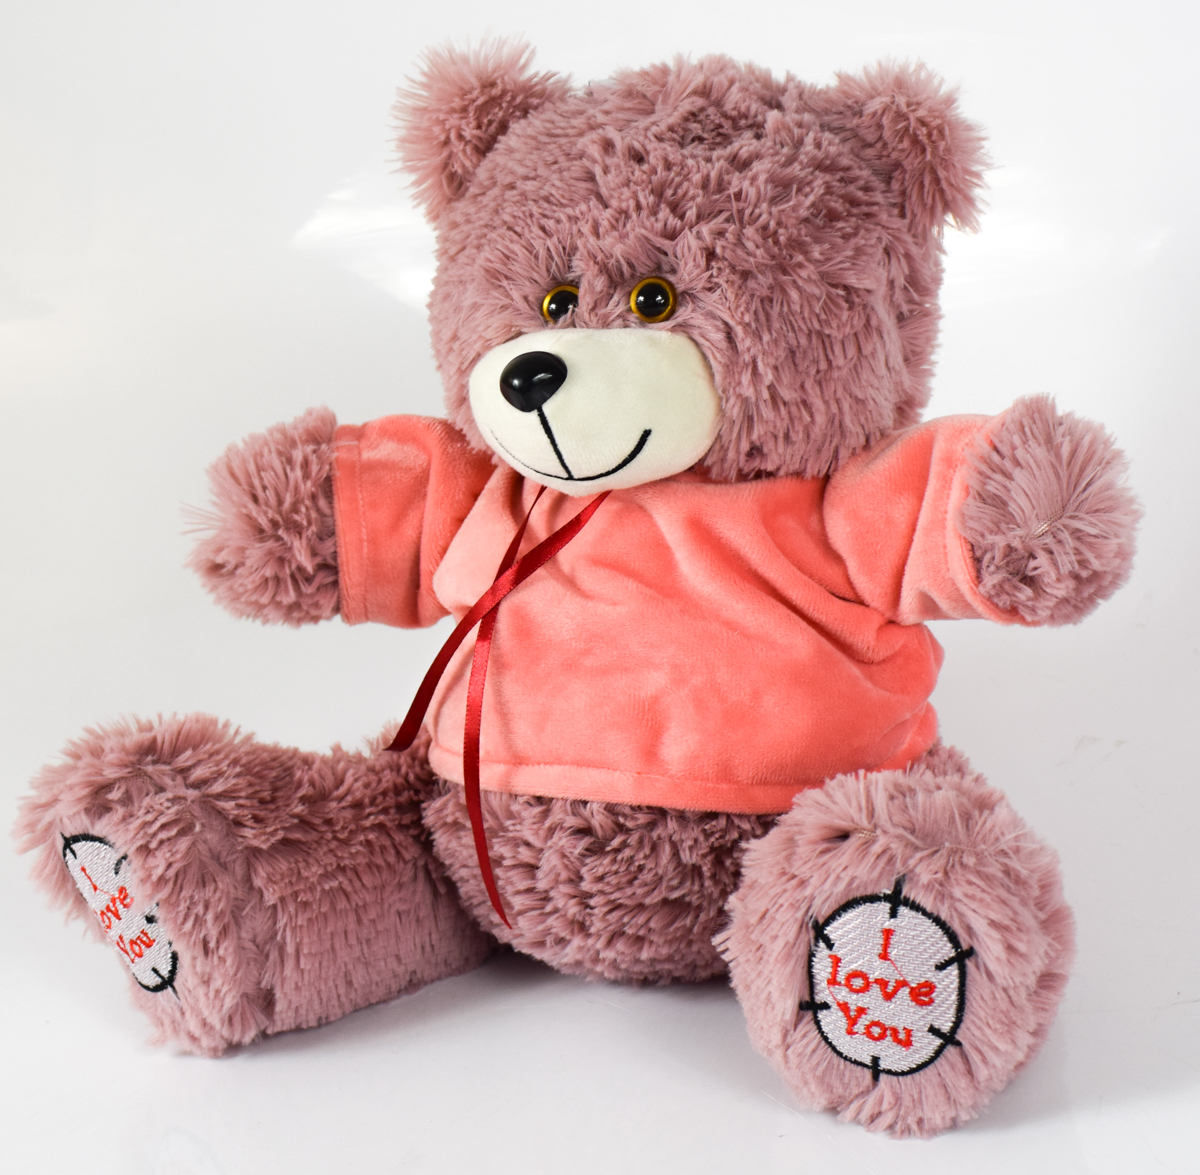 Мишка плюшевый мягкий медведь ТЕД  60 см. Мягкая игрушка медведь. Цвет пудра в розовой кофточке.